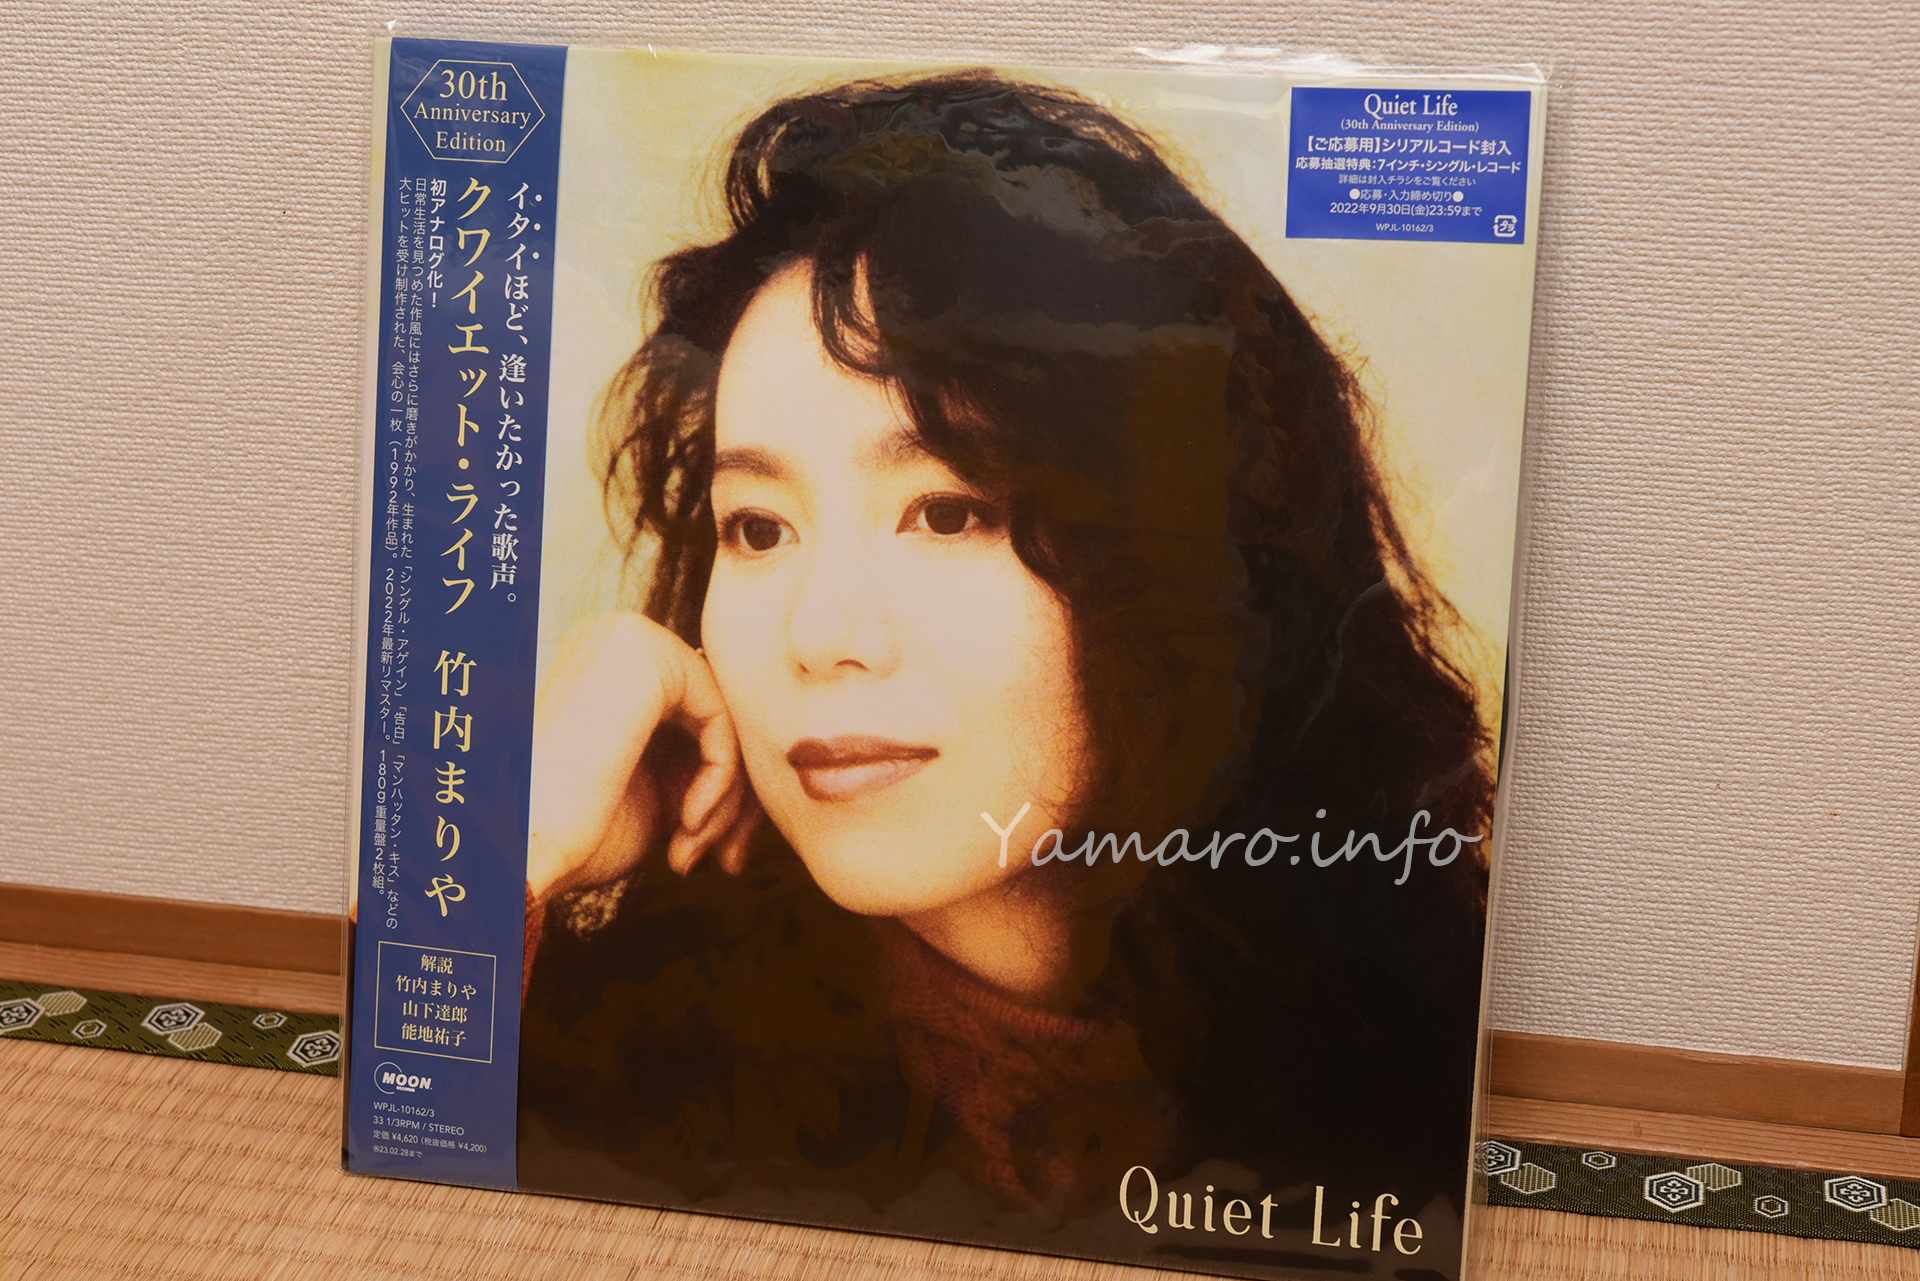 竹内まりや】Quiet Life （30th Anniversary Edition）アナログ盤を ...